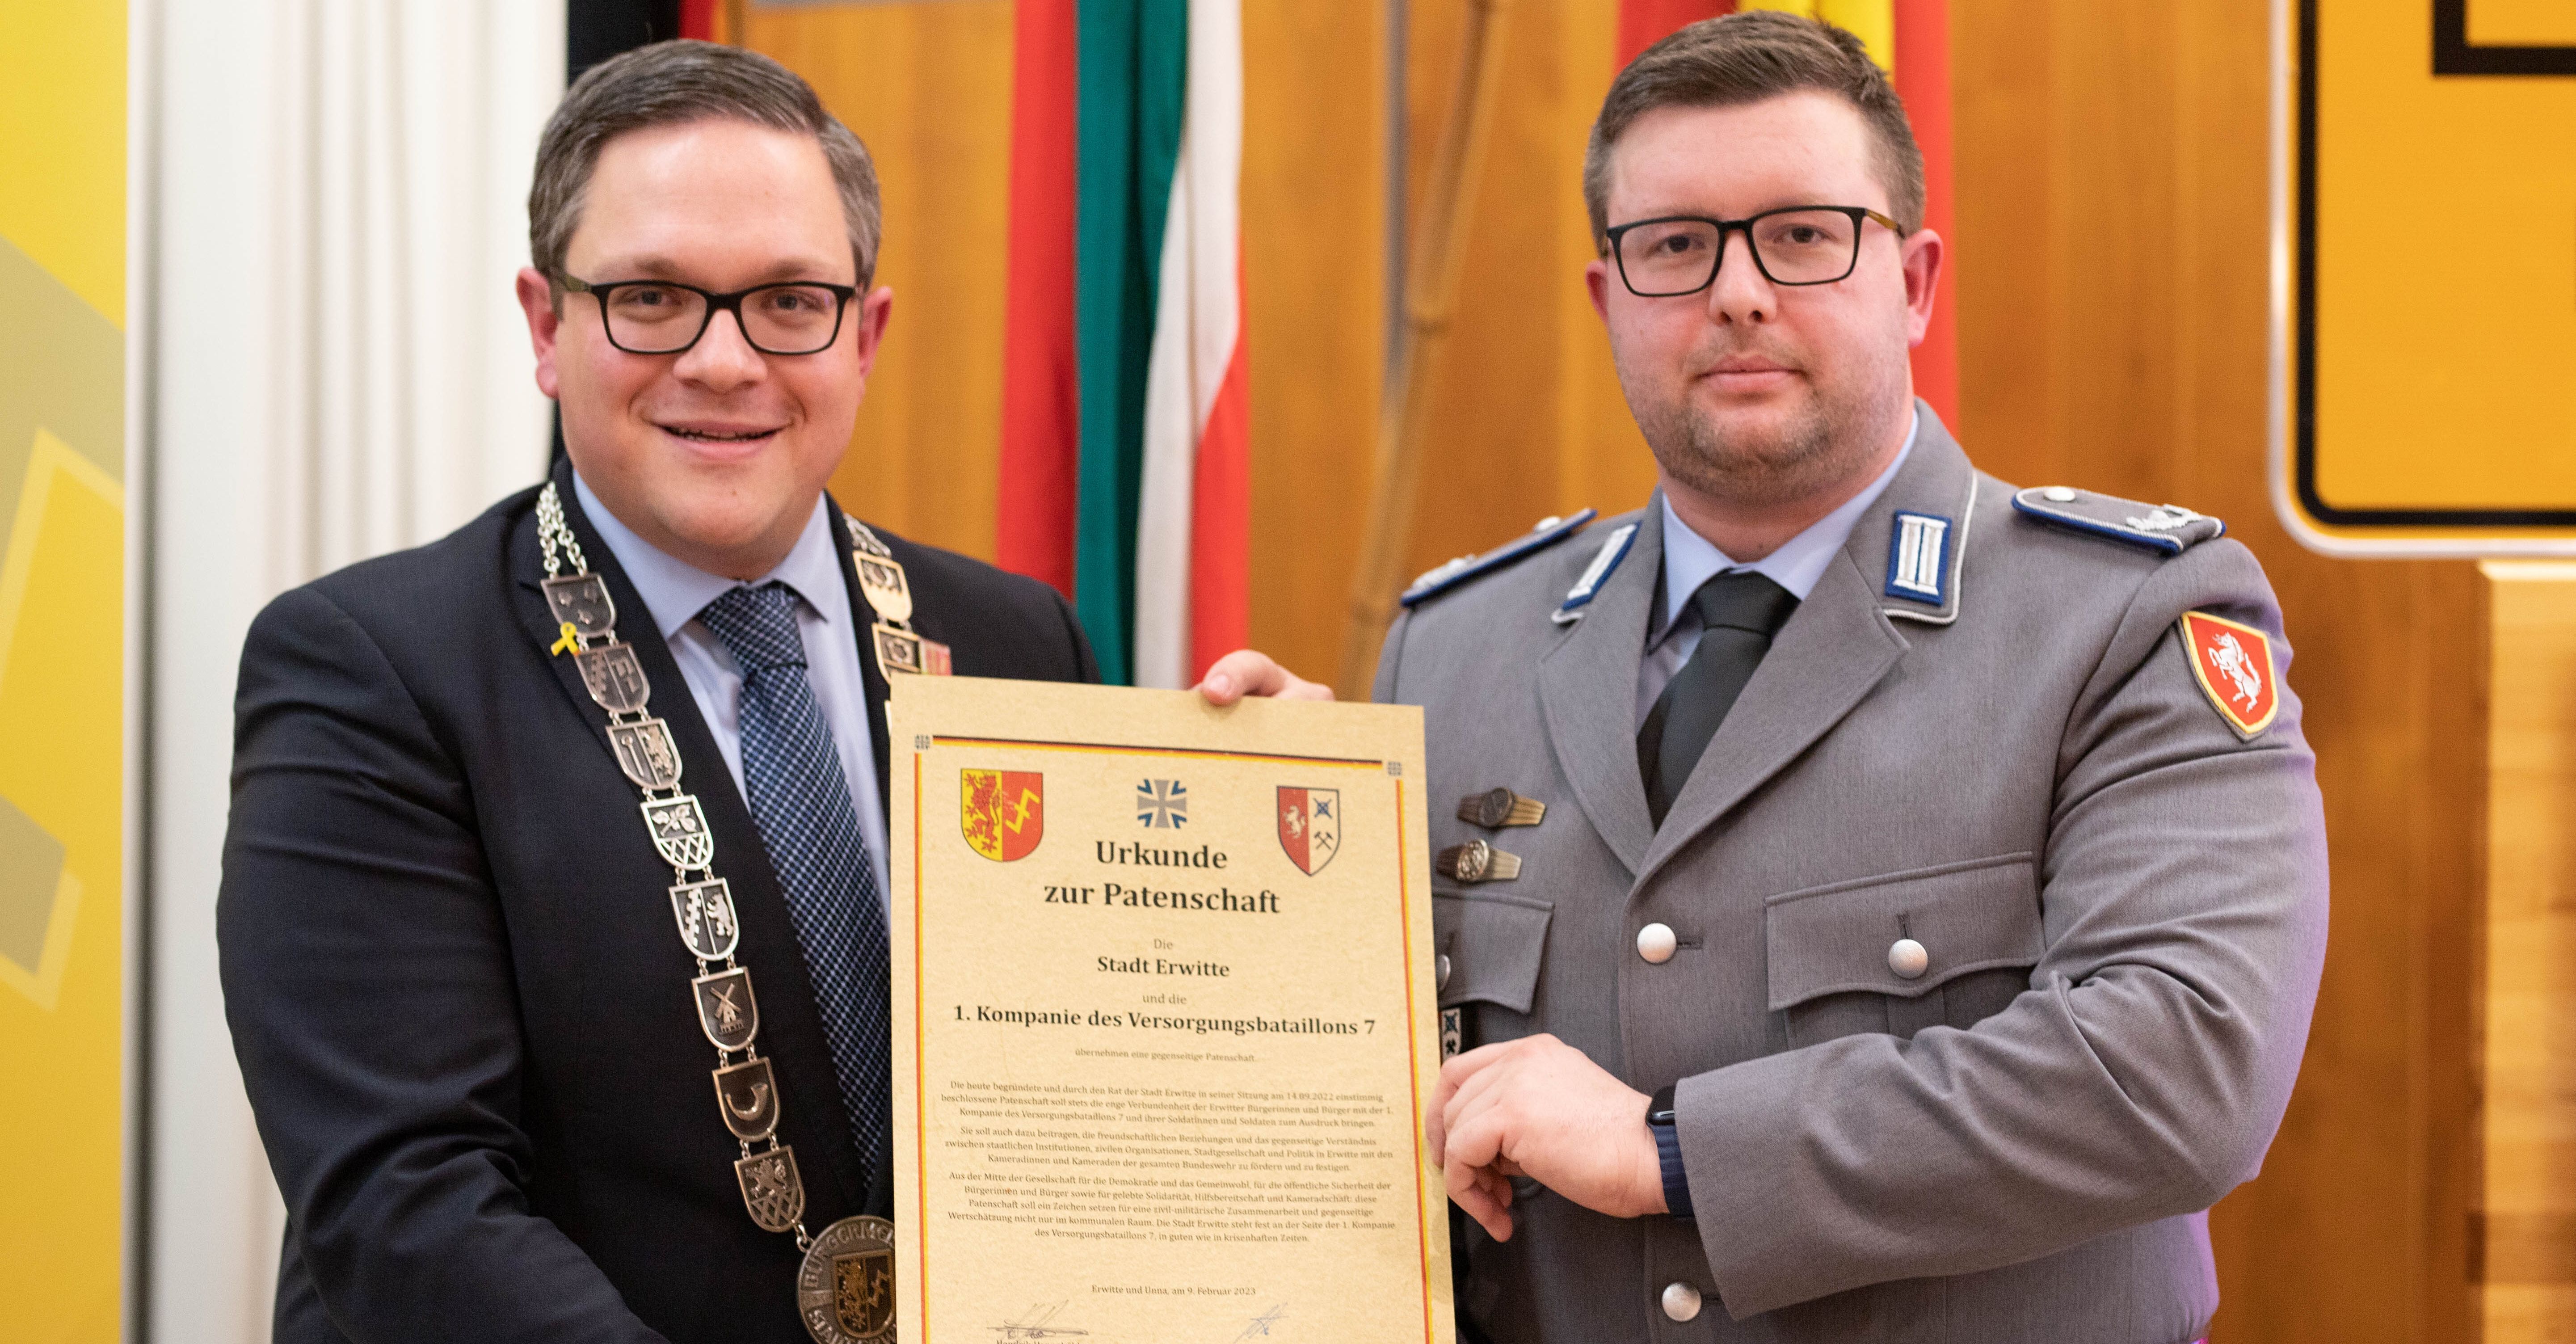 Erwittes Bürgermeister Hendrik Henneböhl und Kompaniechef Major Christoph unterzeichneten die Urkunde für eine gemeinsame Patenschaft